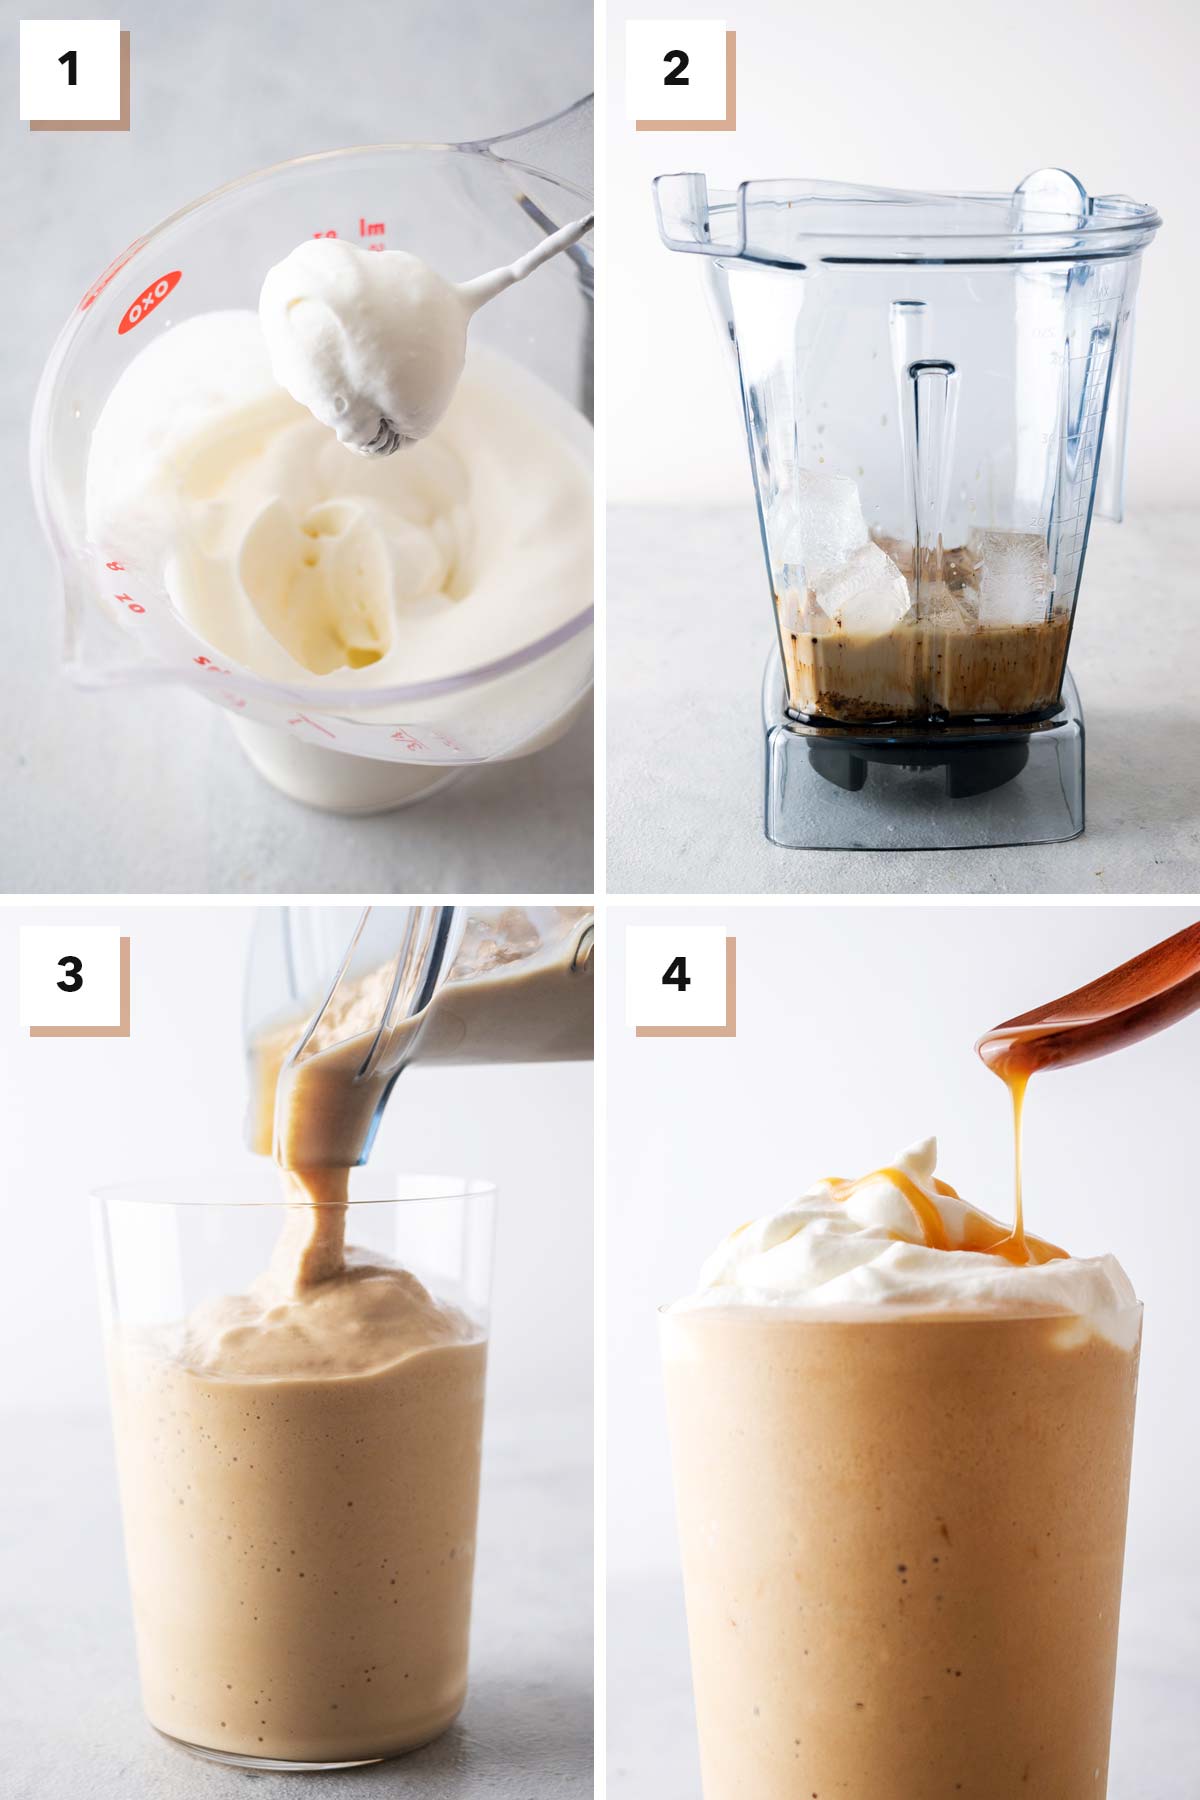 Vier fotocollage met stappen om een Caramel Frappuccino te maken.